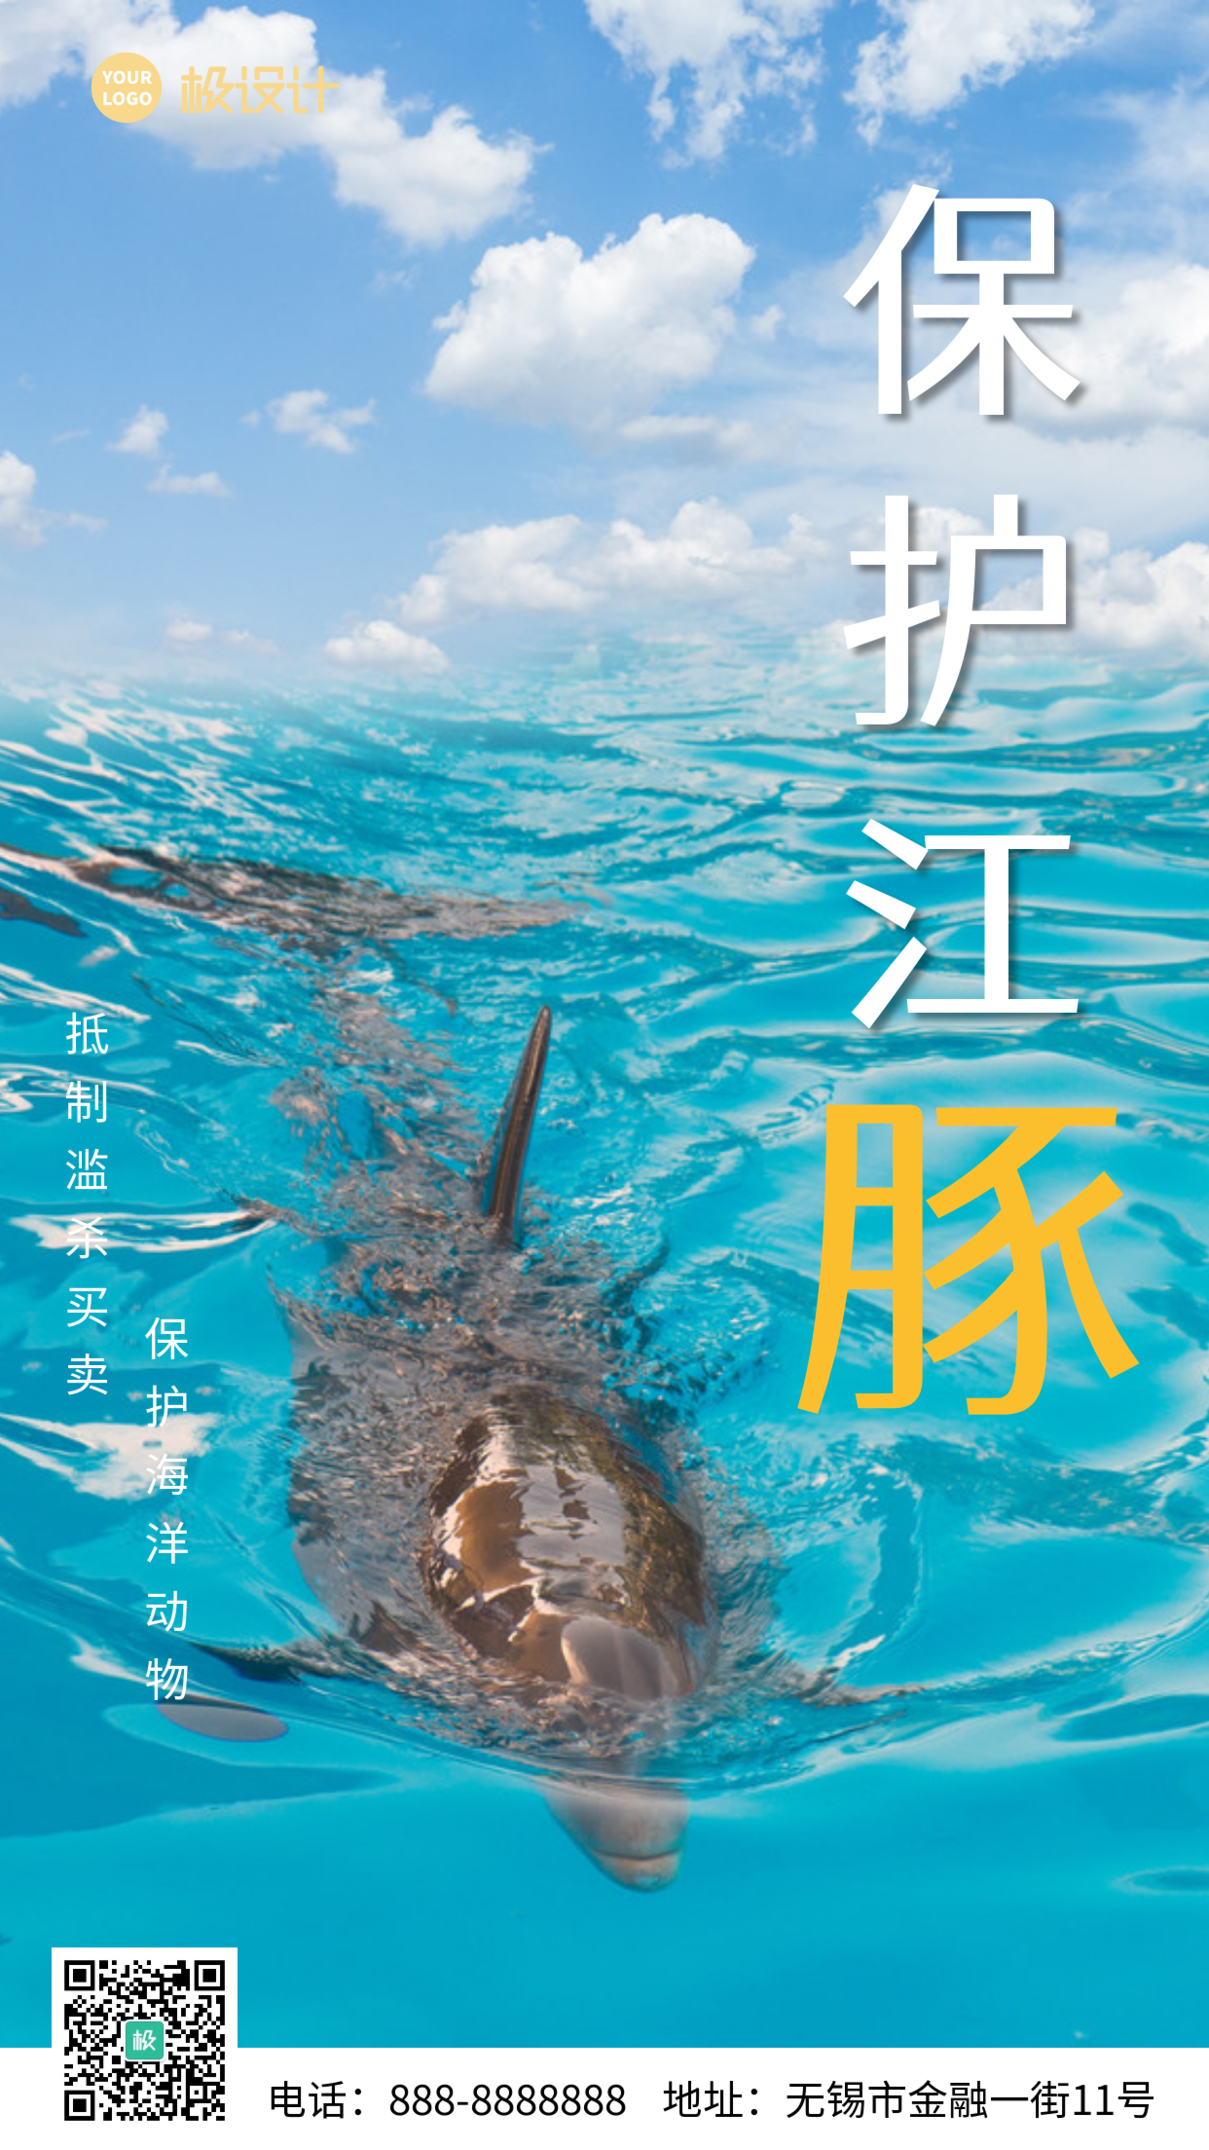 保护江豚创意海报简约大气手机海报